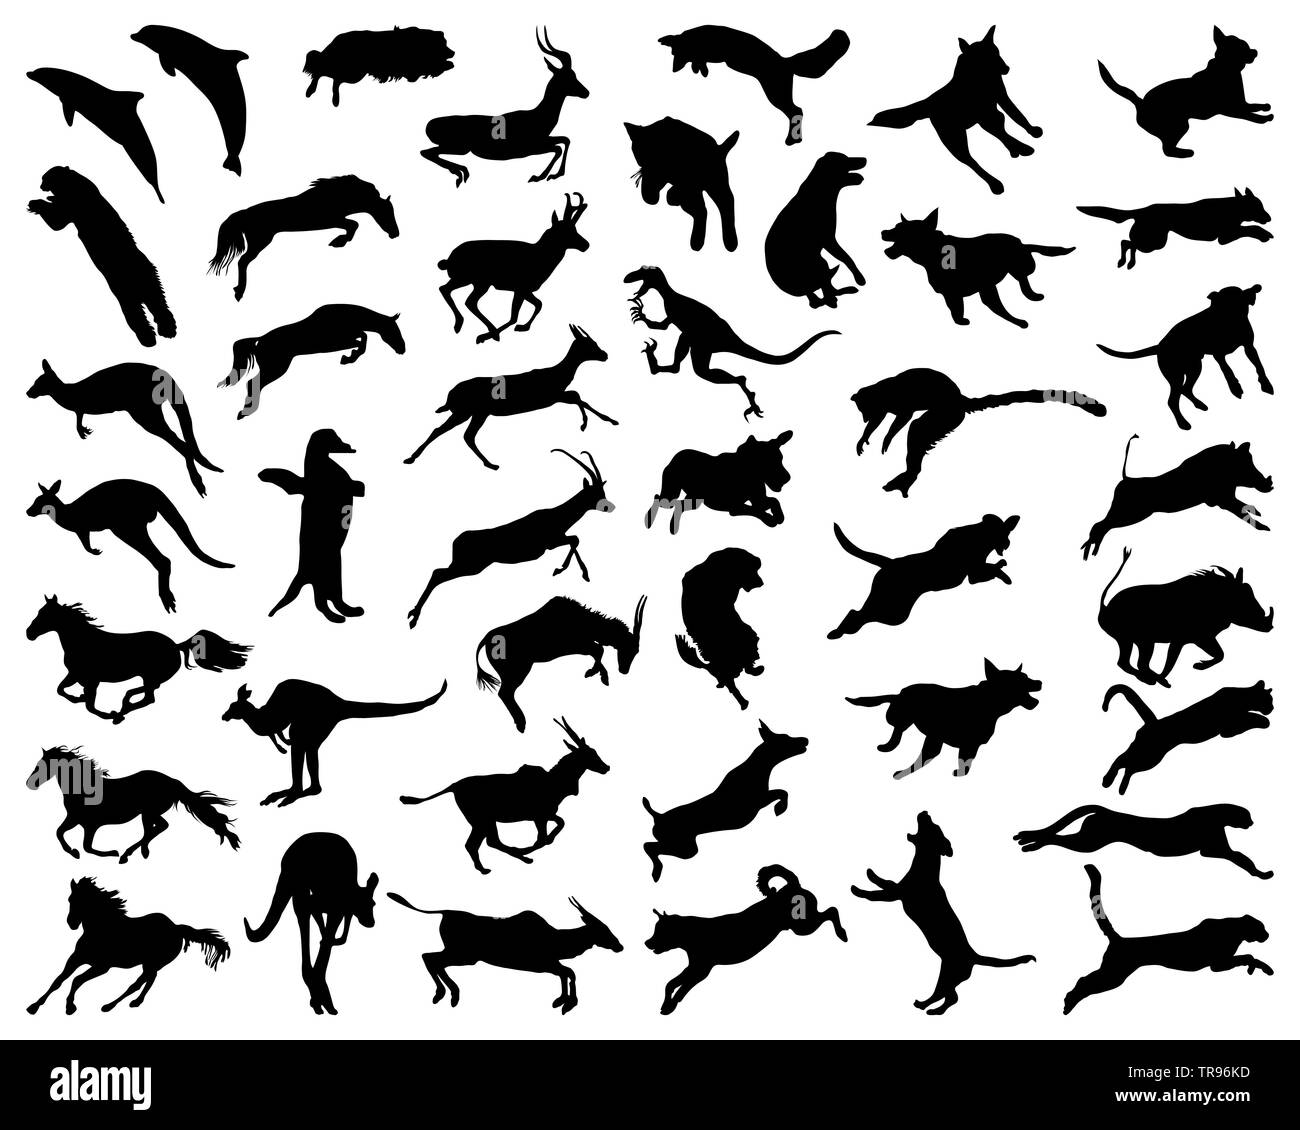 Silhouettes noires d'animaux dans un saut sur un fond blanc Banque D'Images